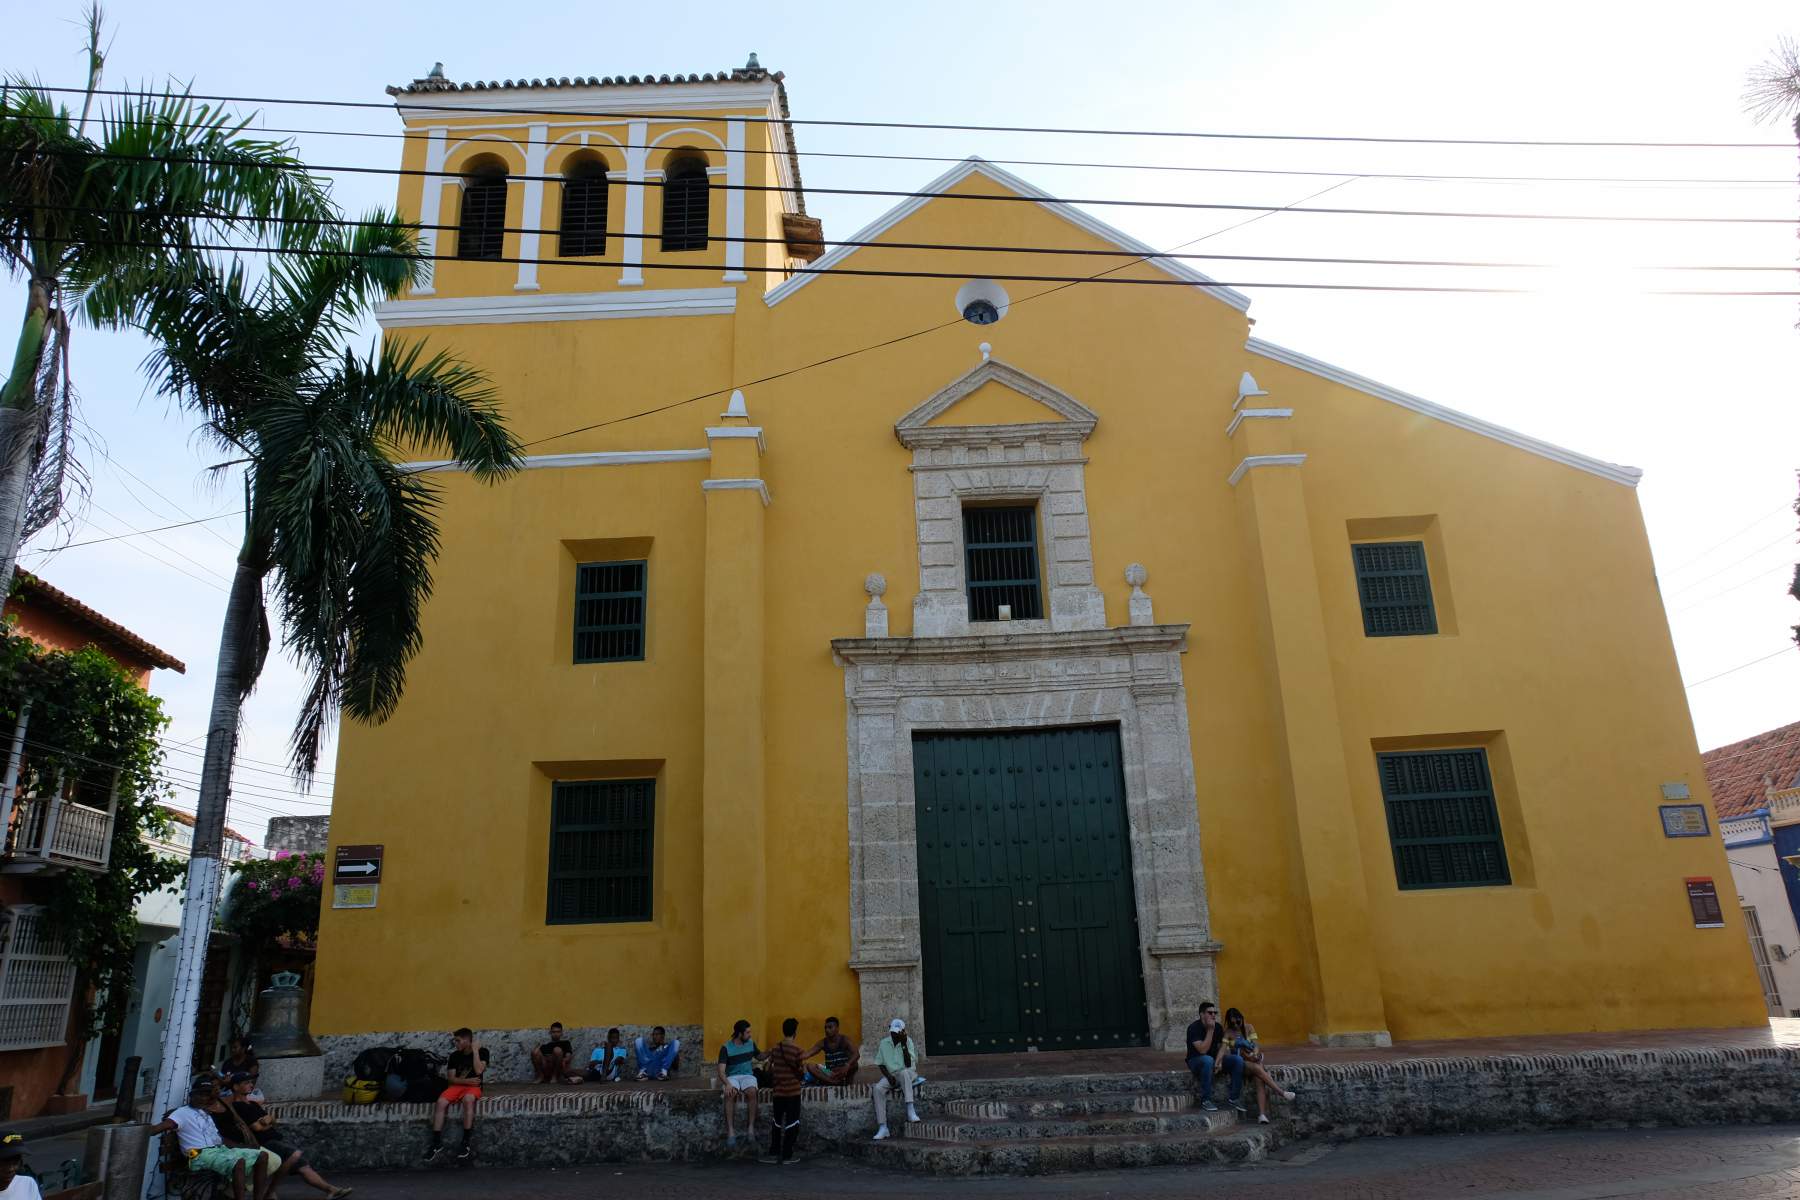 Santisima Trinidad Church in Getsemaní, Cartagena, Colombia